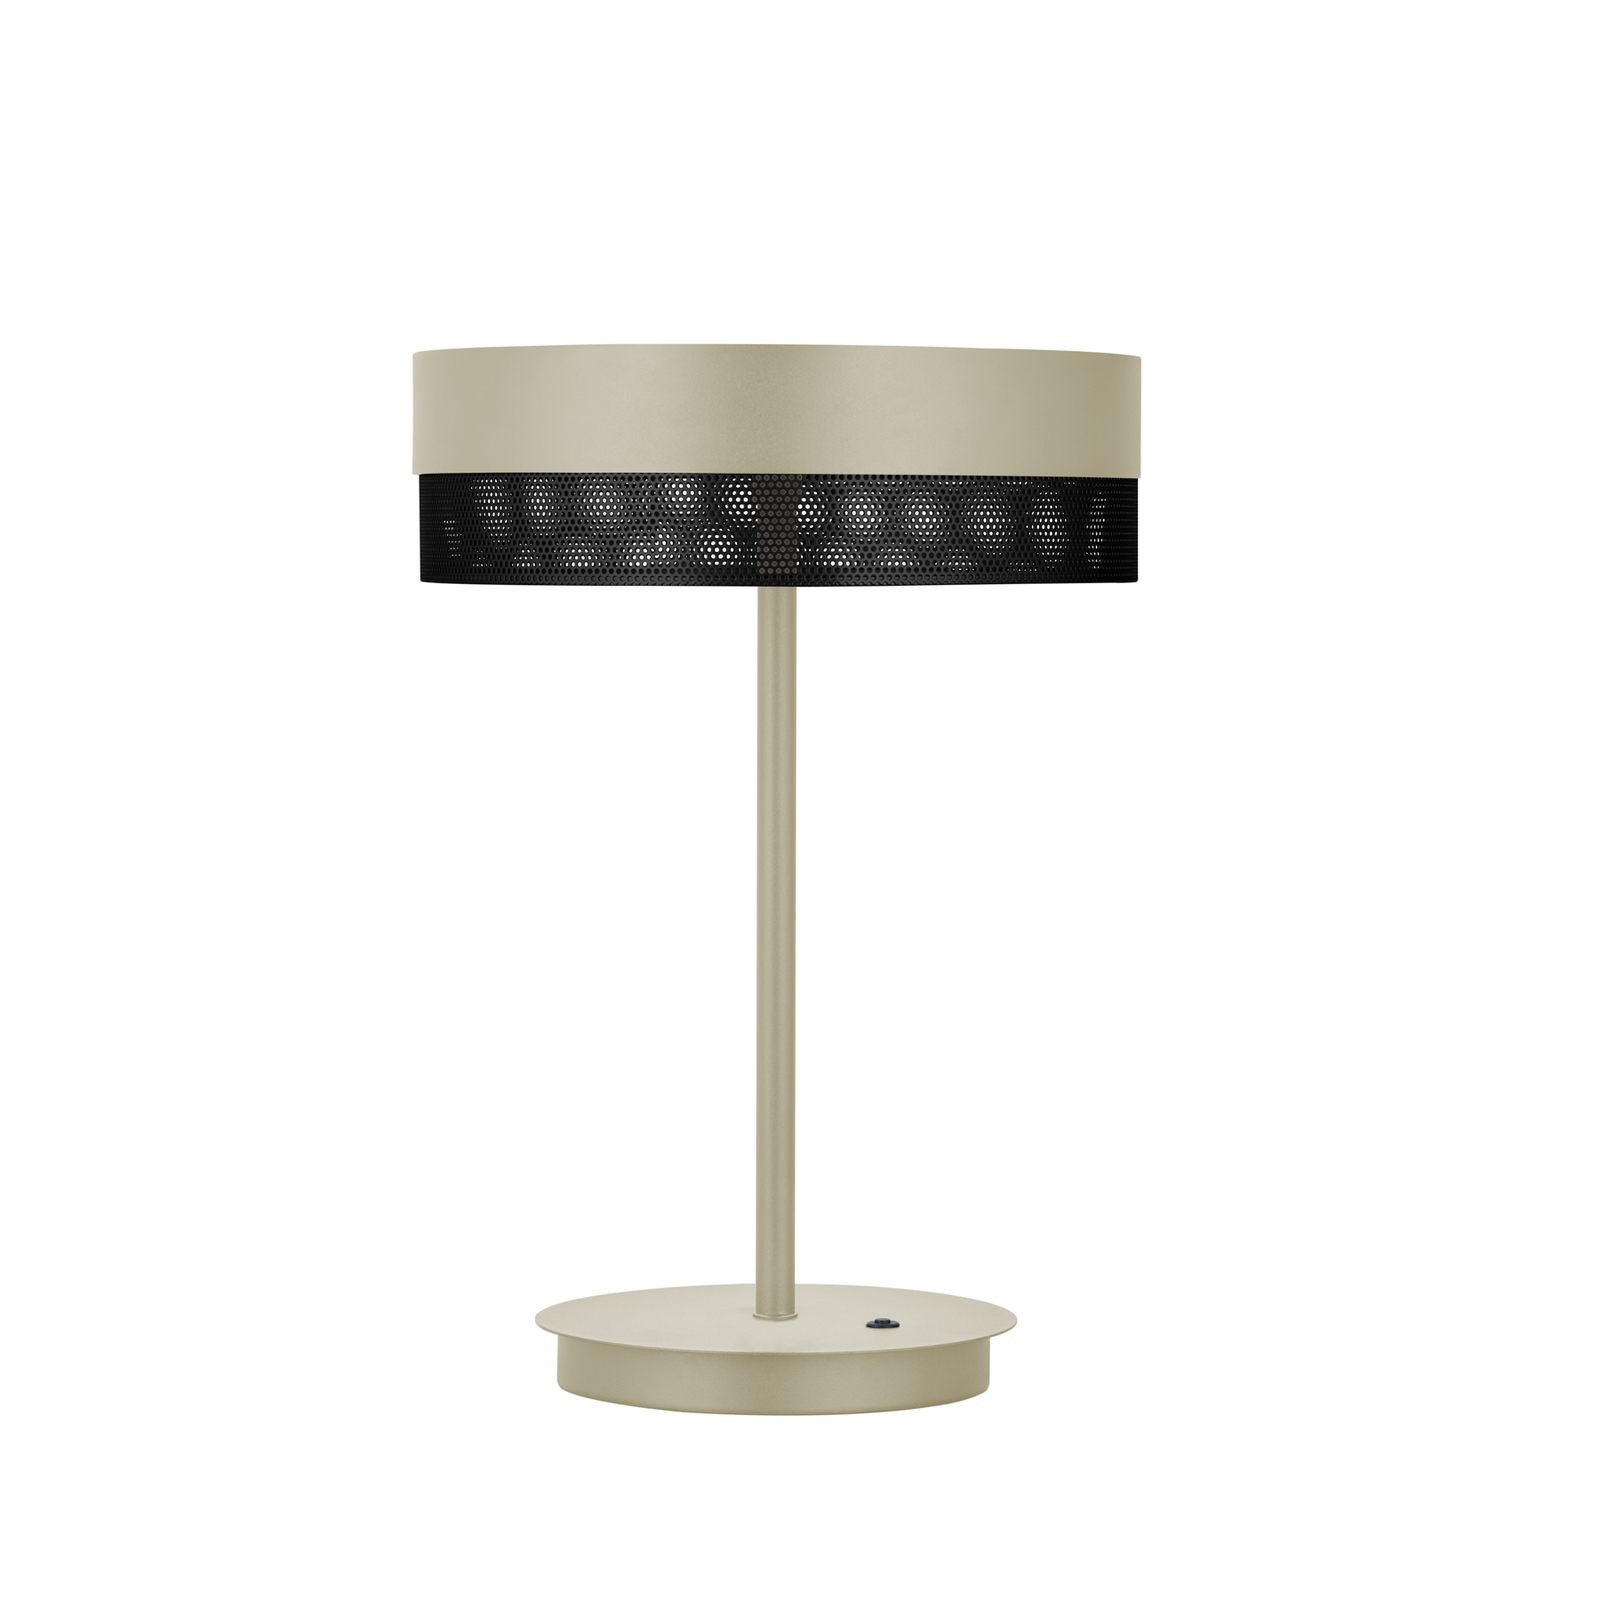 Stolová LED lampa Mesh výška 43 cm piesková/čierna